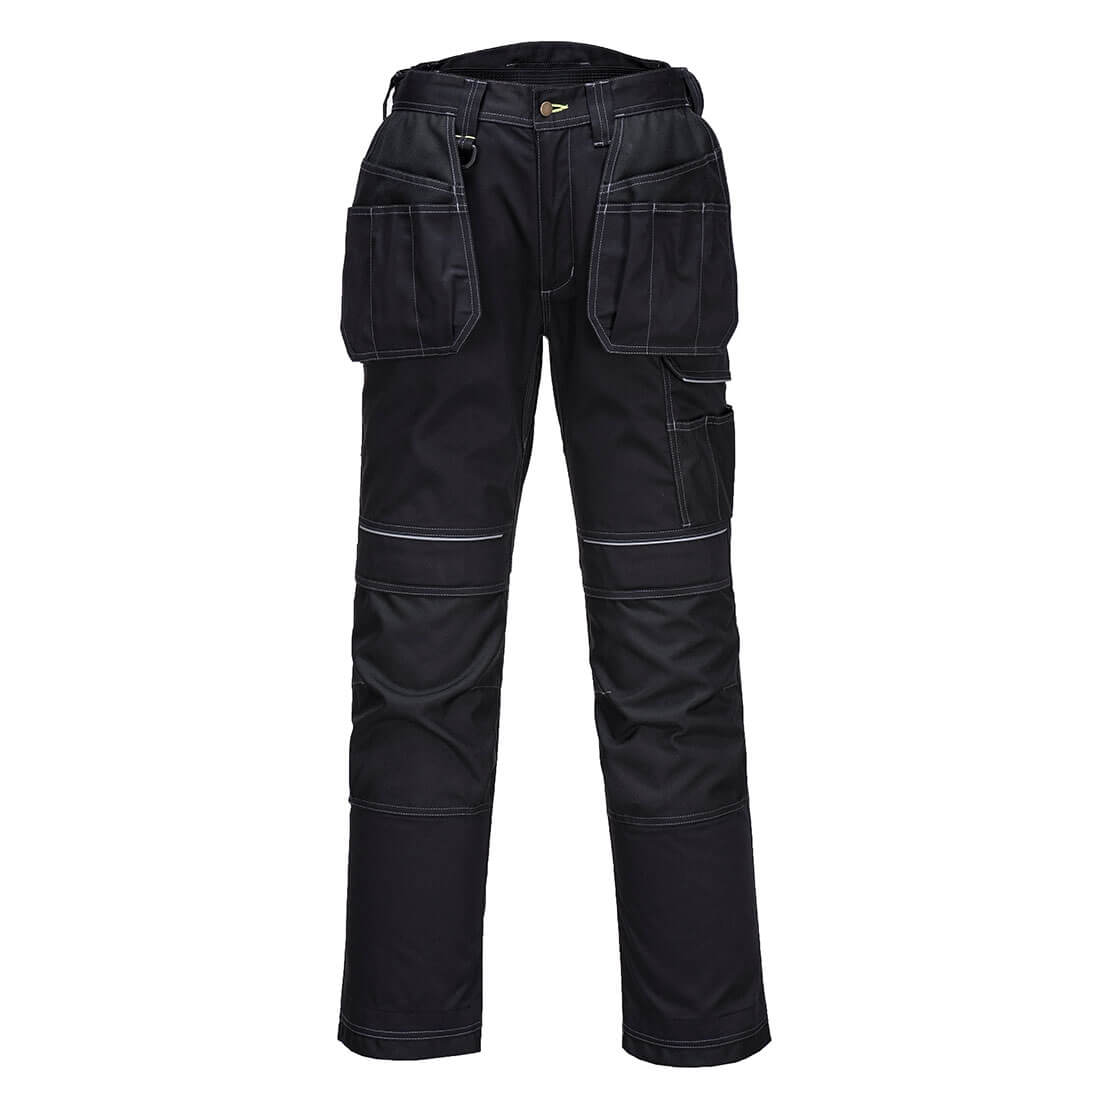 Pantalon Holster Urban Work - Les vêtements de protection